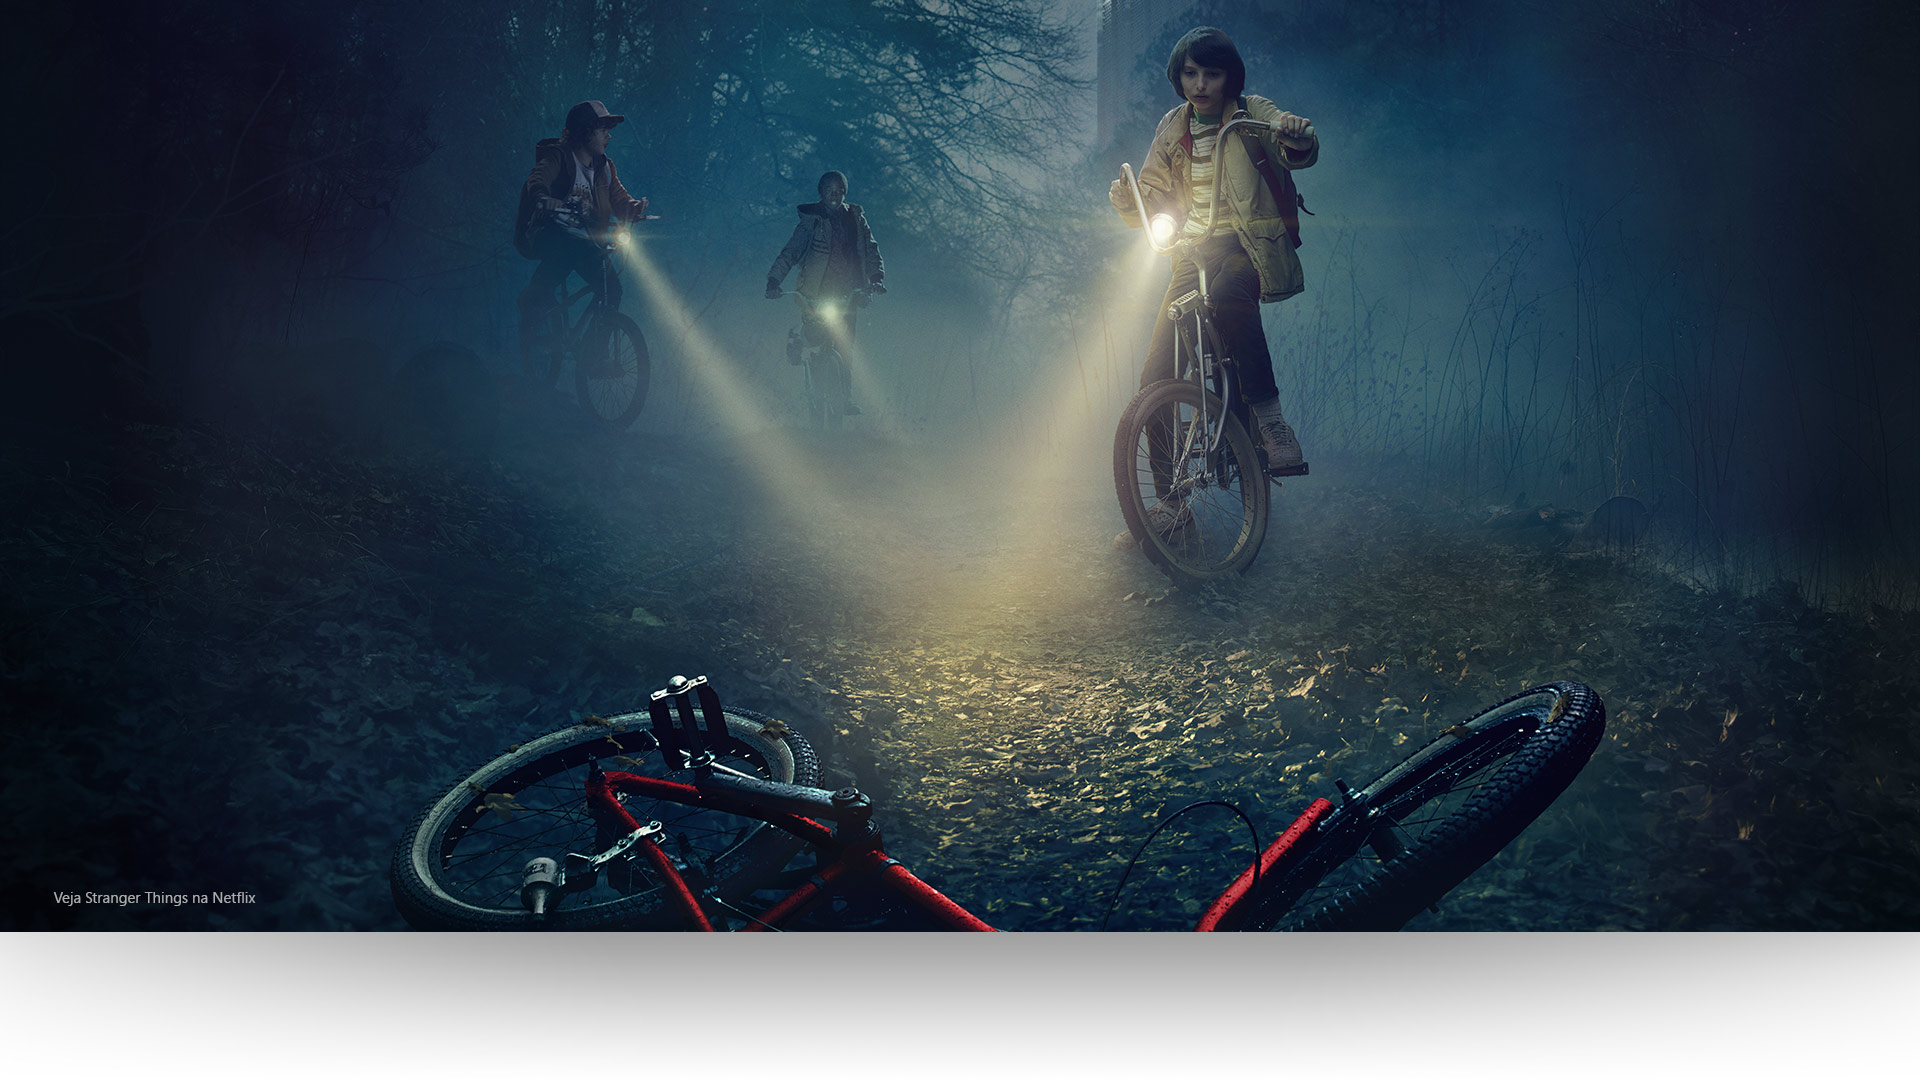 Stranger Things - Dustin, Lucas e Mike iluminam uma bicicleta abandonada em um caminho sombrio na floresta. Assista a Stranger Things na Netflix.